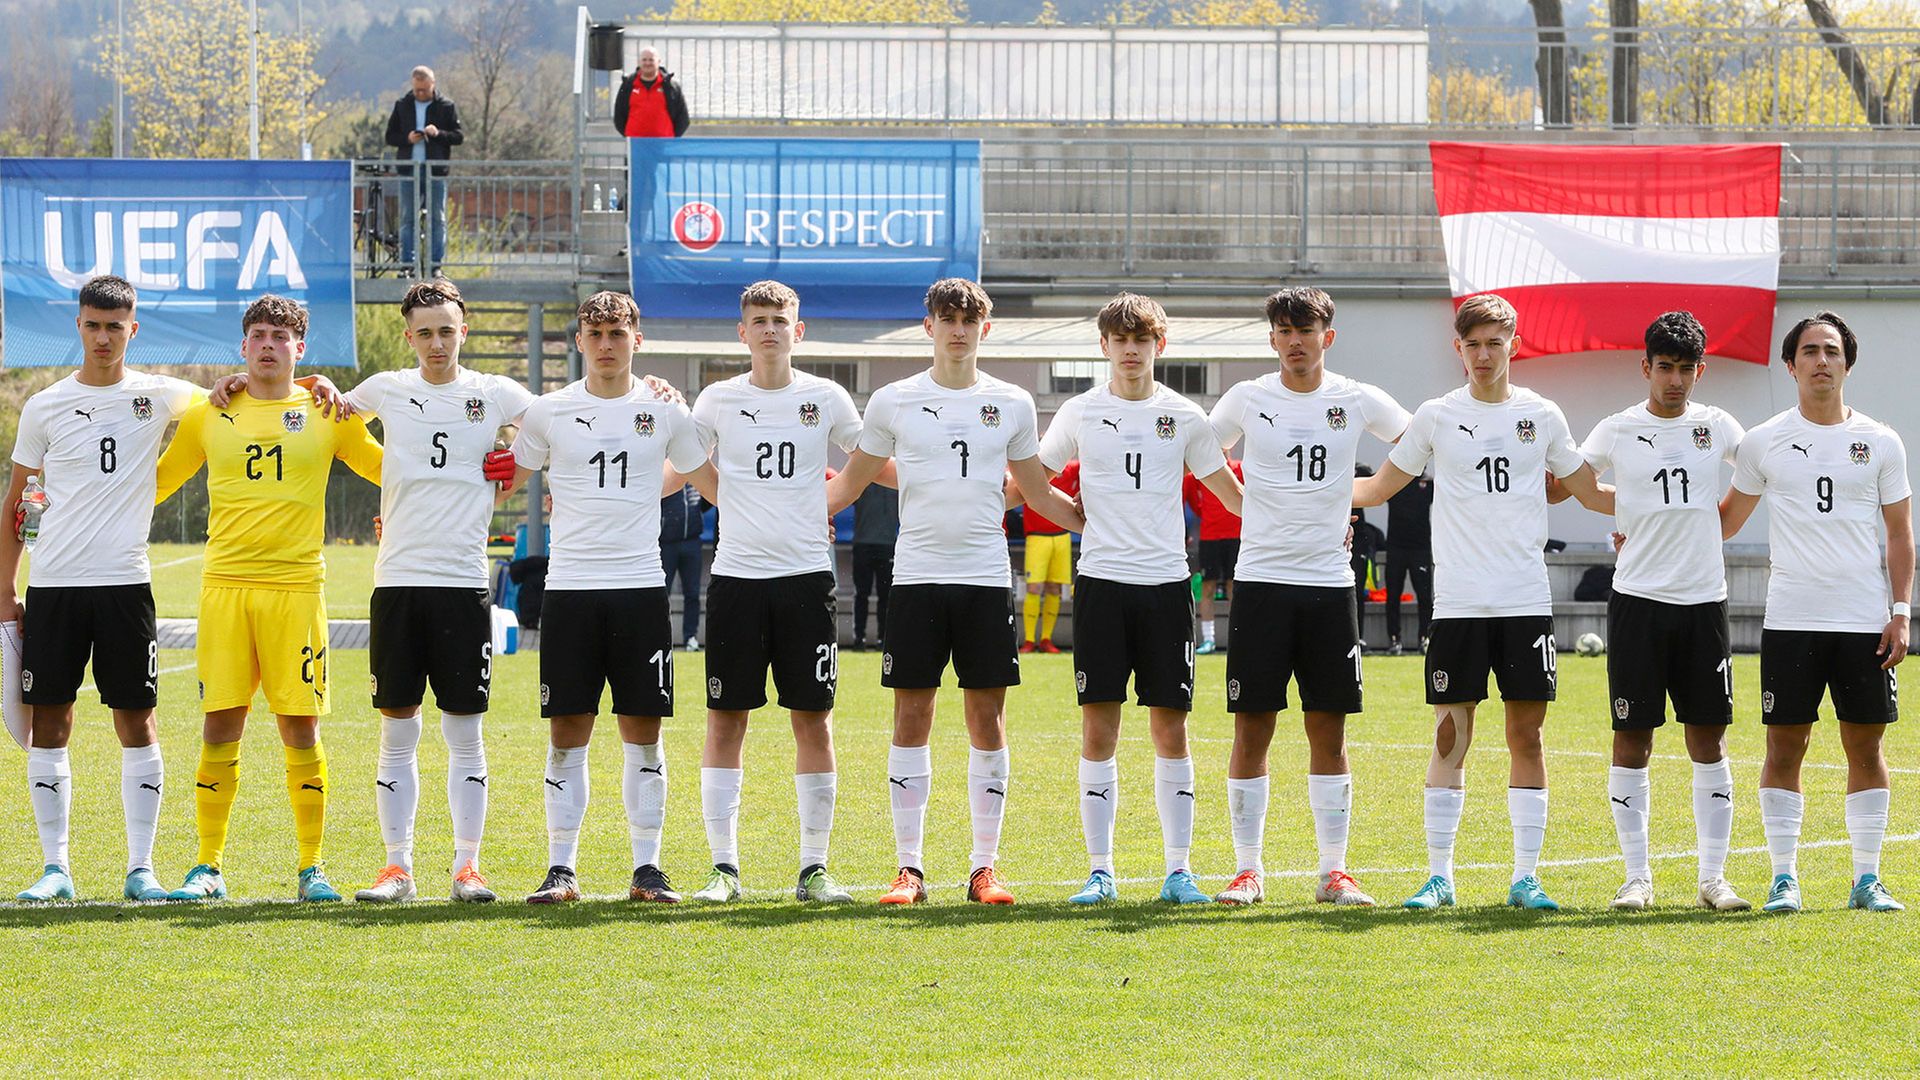 Erneutes Remis für U16-Team in Tschechien oefb.at